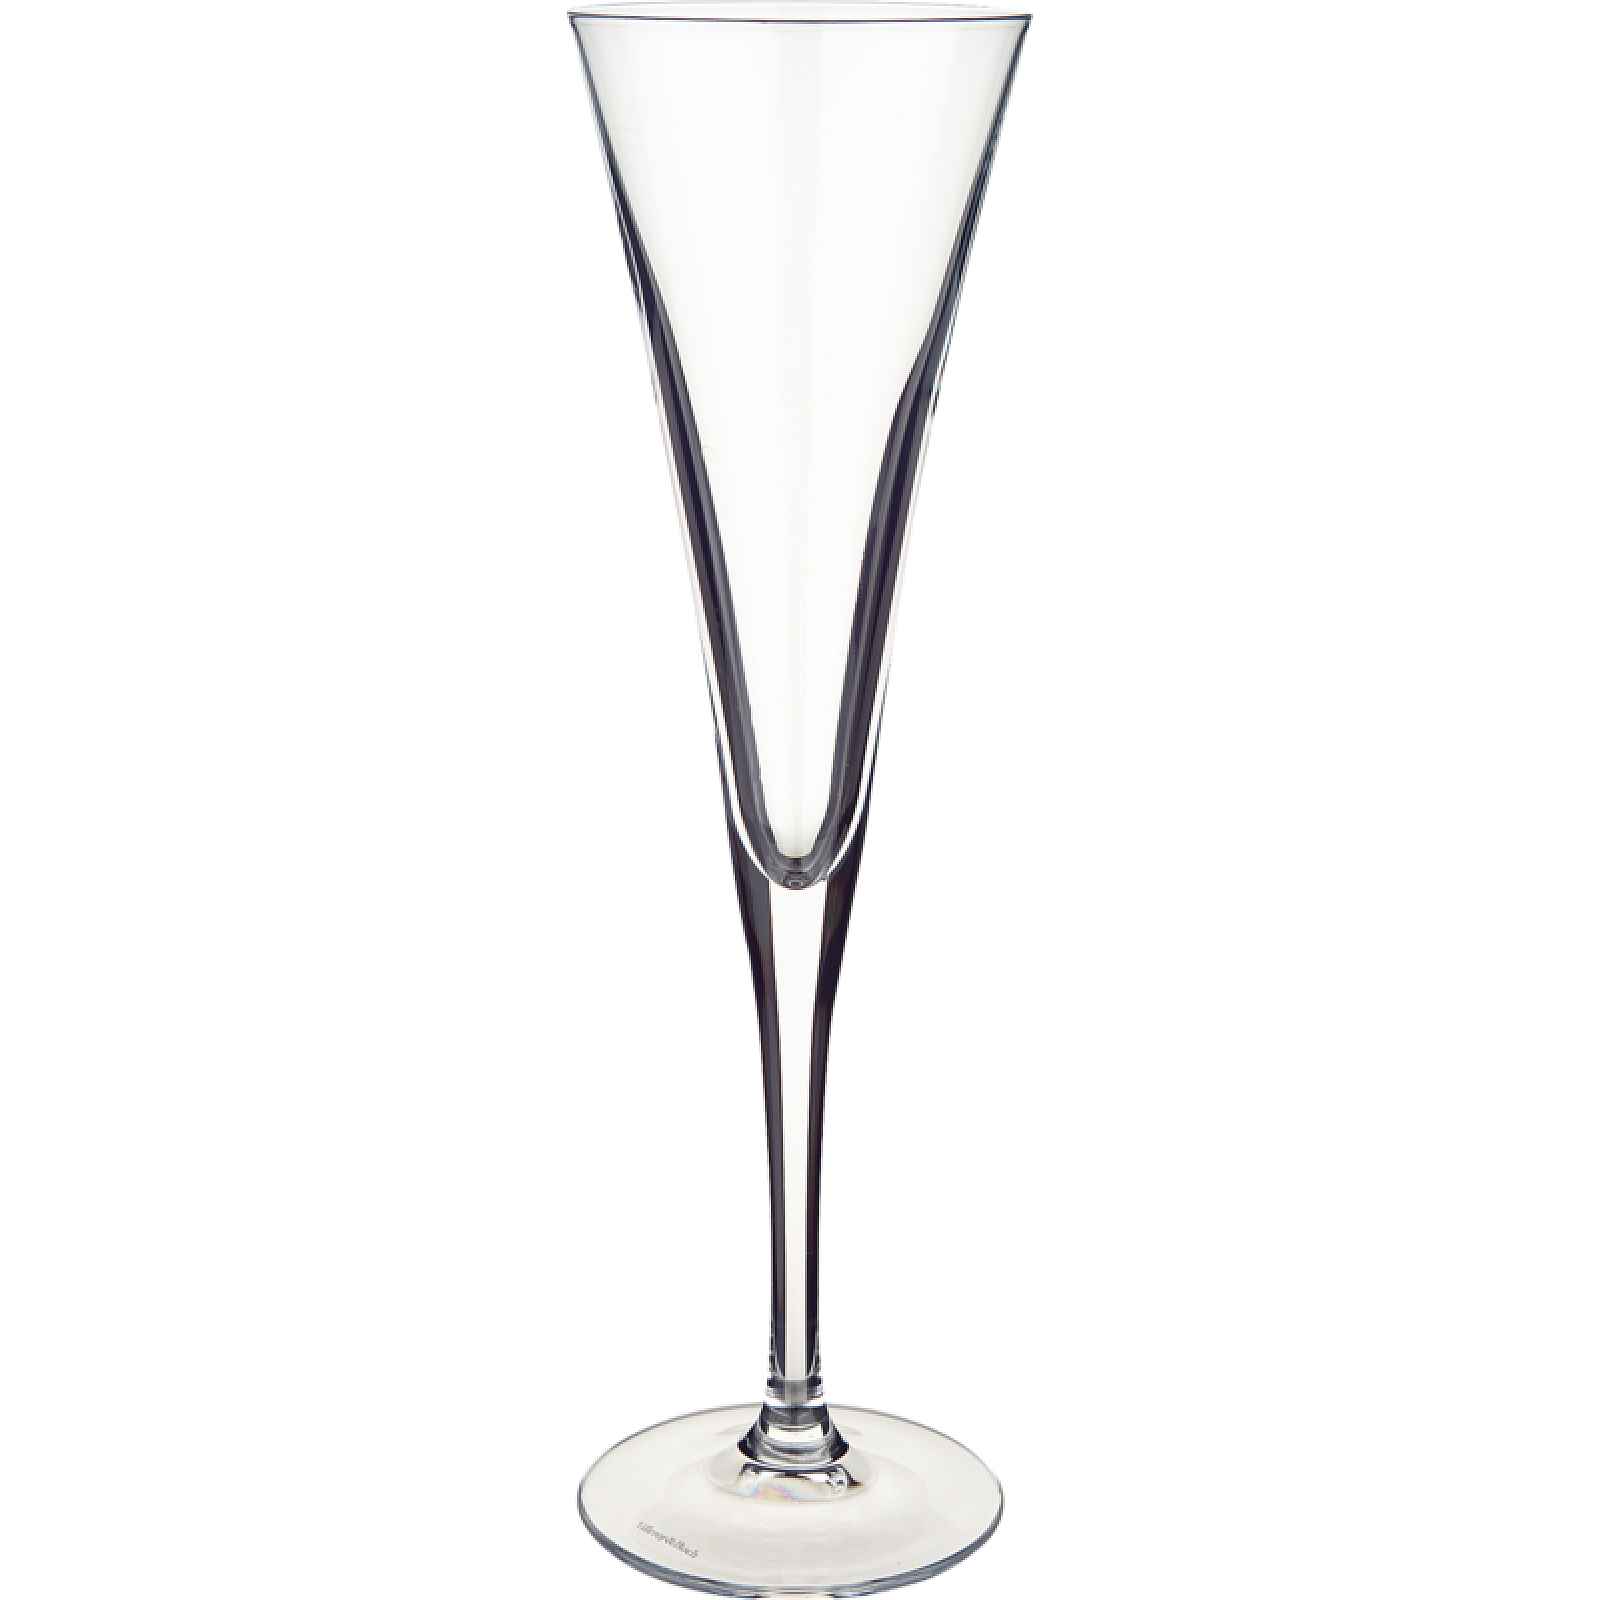 Villeroy & Boch Purismo Specials sklenice na šampaňské, 0,27 l